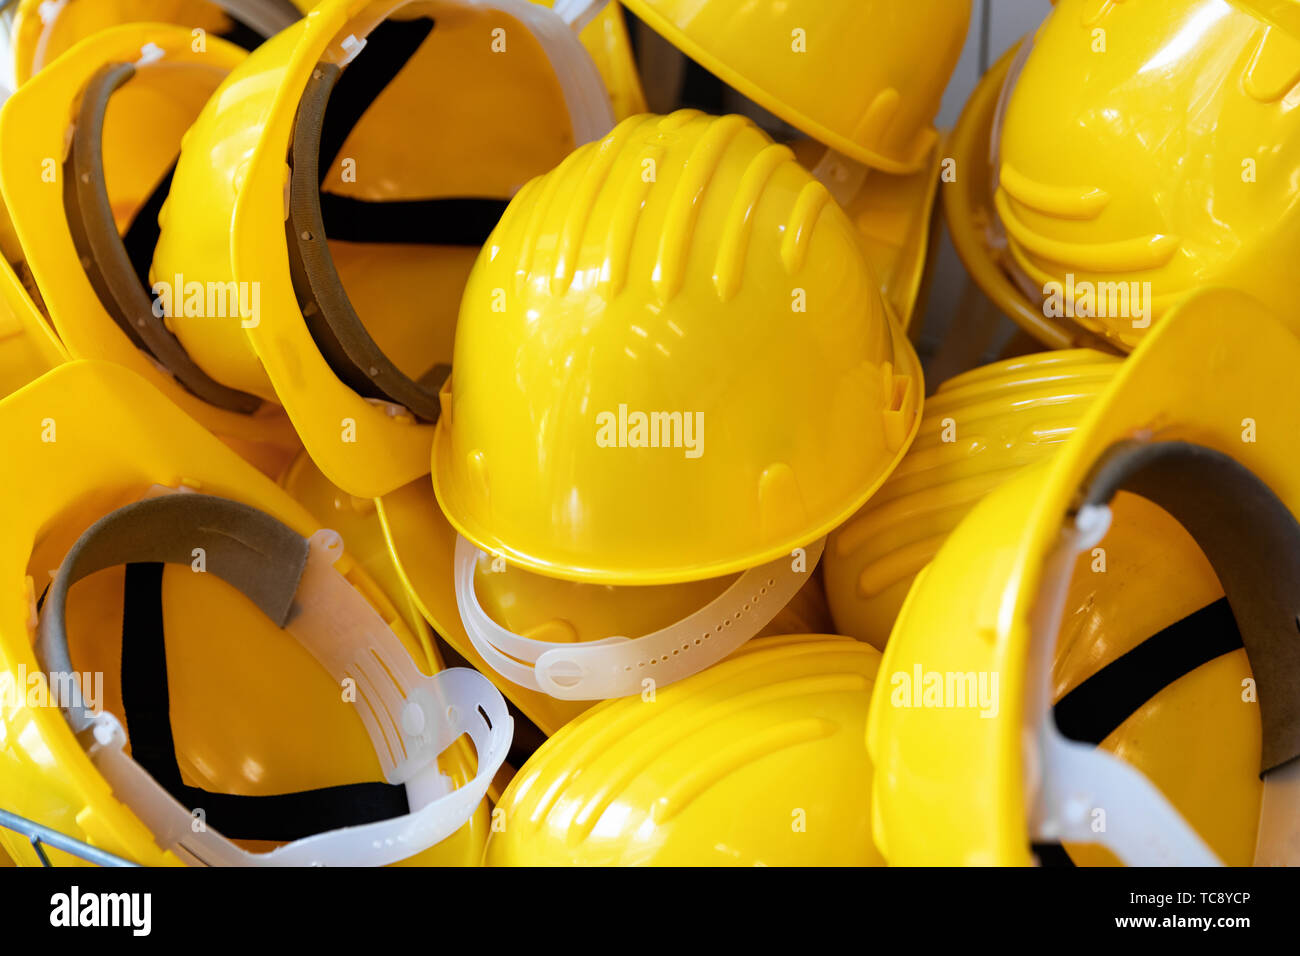 L'industrie de la construction - groupe de casques de sécurité jaune Banque D'Images